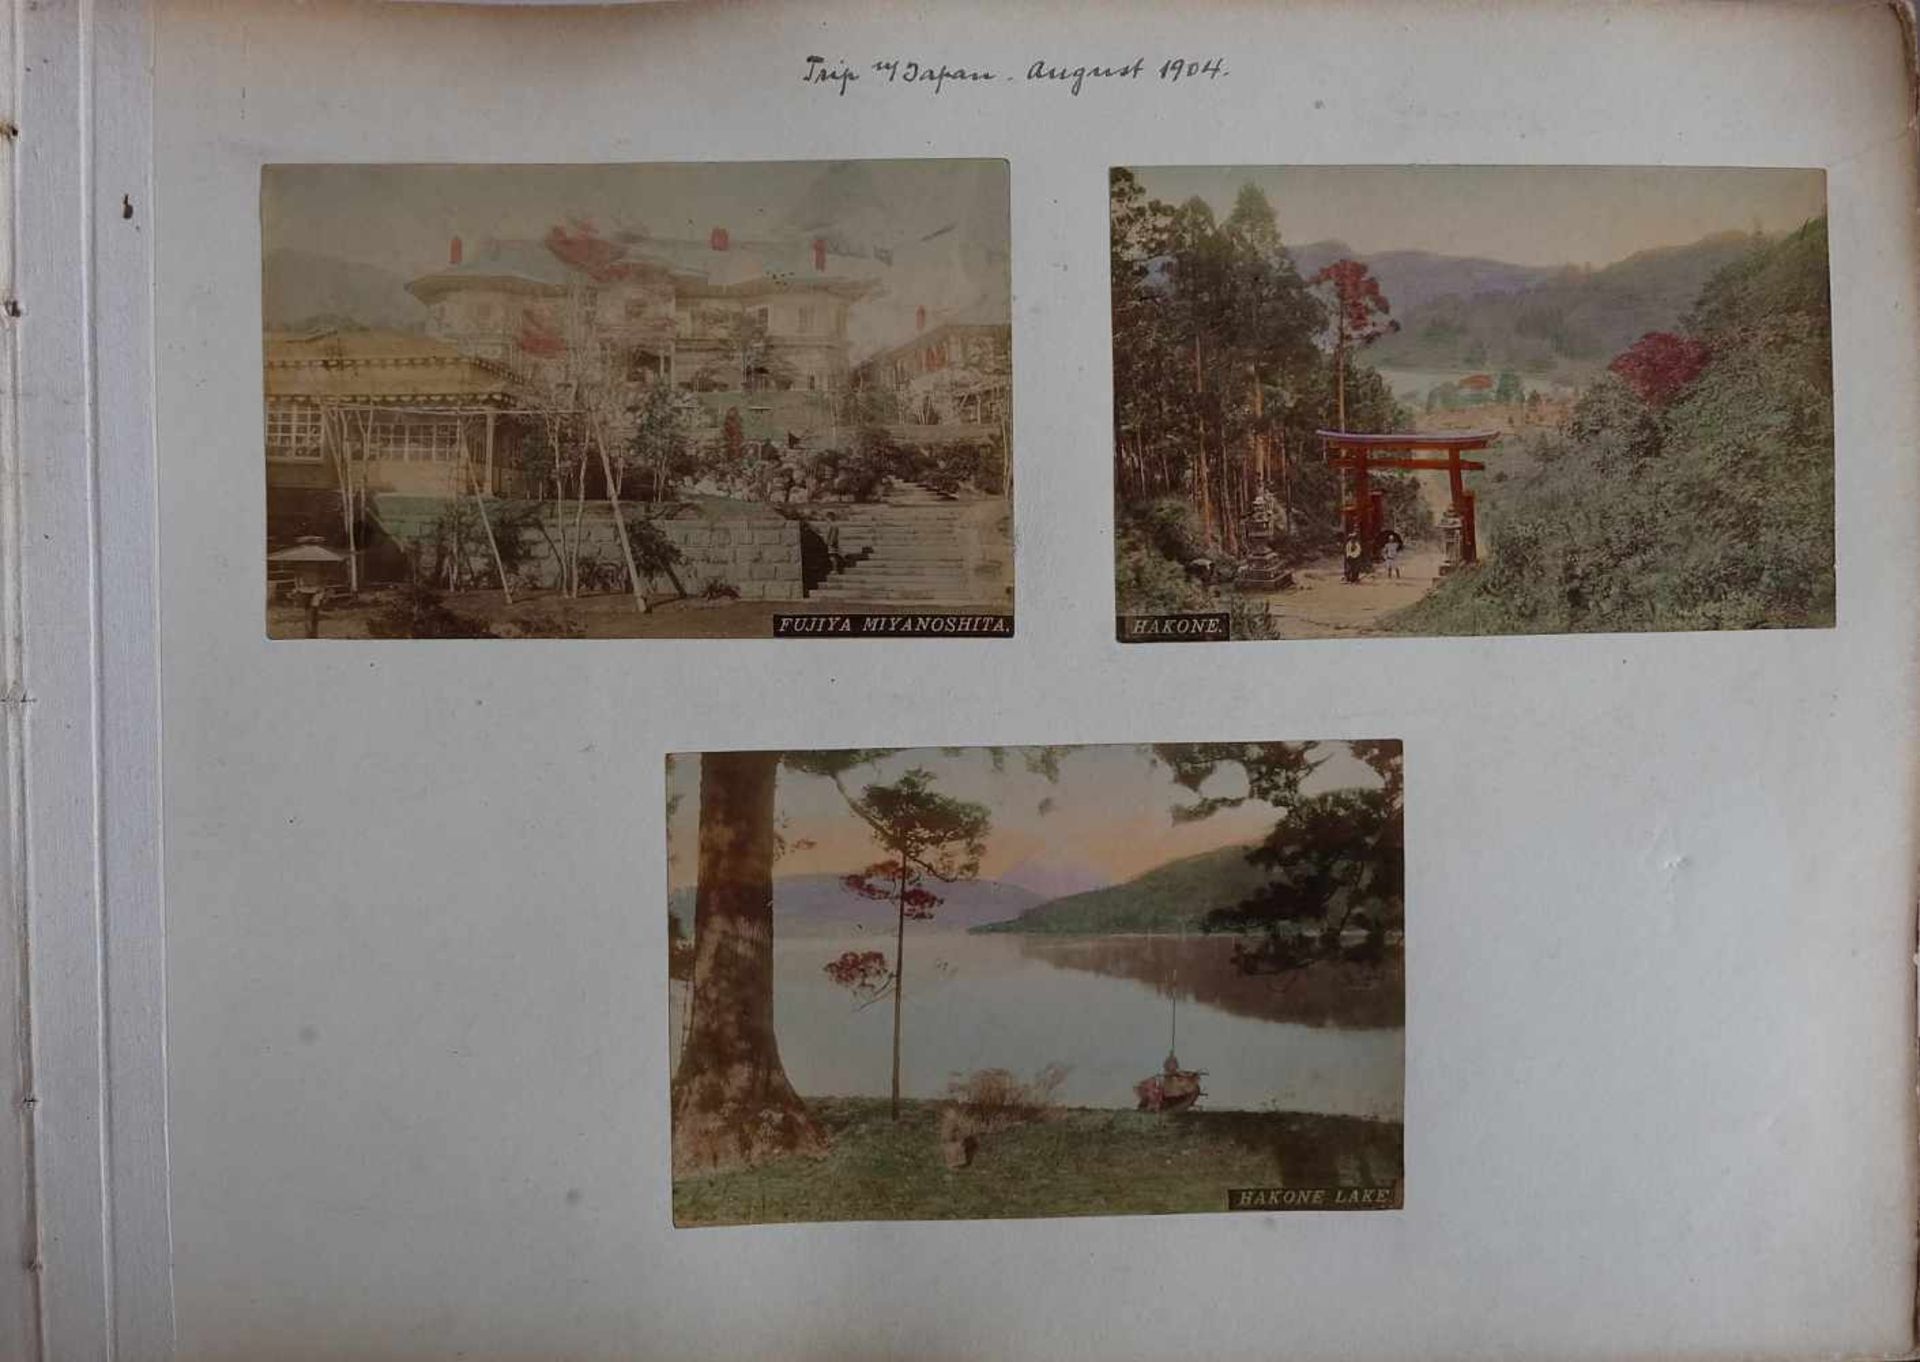 DEUTSCHES REICH, 2 Fotoalben, Shanghai, um 1900, Fotos des Militär- und Freizeitlebens eines - Image 2 of 7